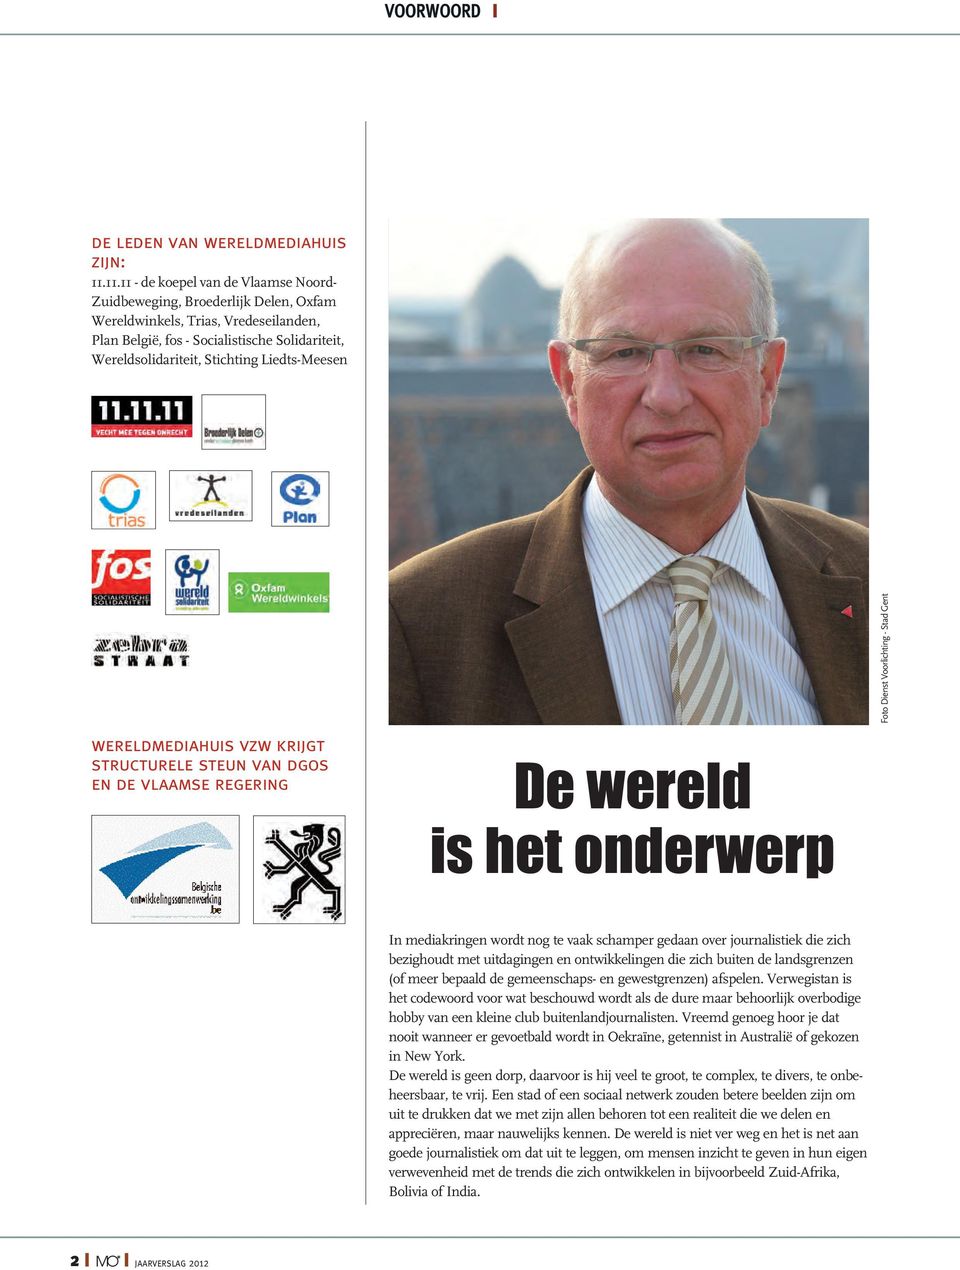 Liedts-Meesen wereldmediahuis vzw krijgt structurele steun van dgos en de vlaamse regering De wereld is het onderwerp Foto Dienst Voorlichting - Stad Gent In mediakringen wordt nog te vaak schamper